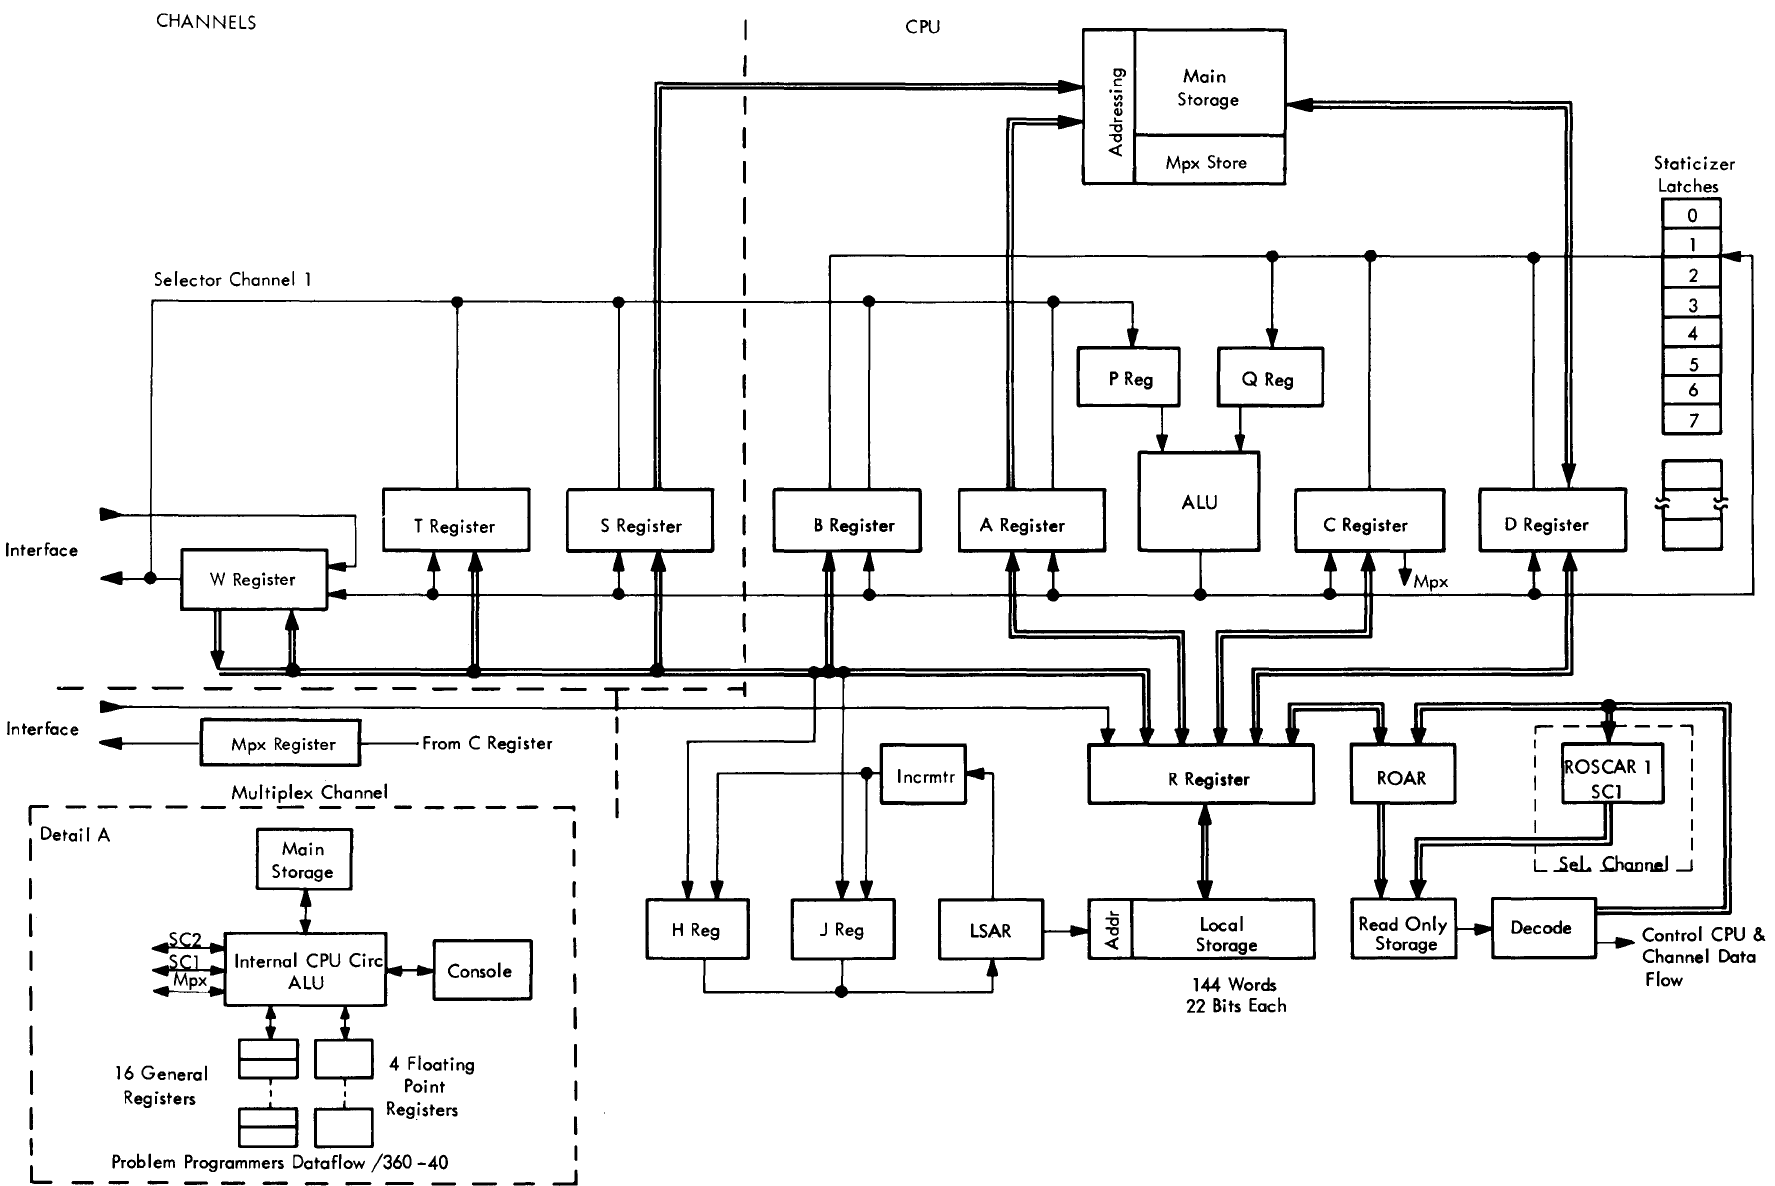 Основные узлы и потоки данных в процессоре IBM 2040, скан из [5]